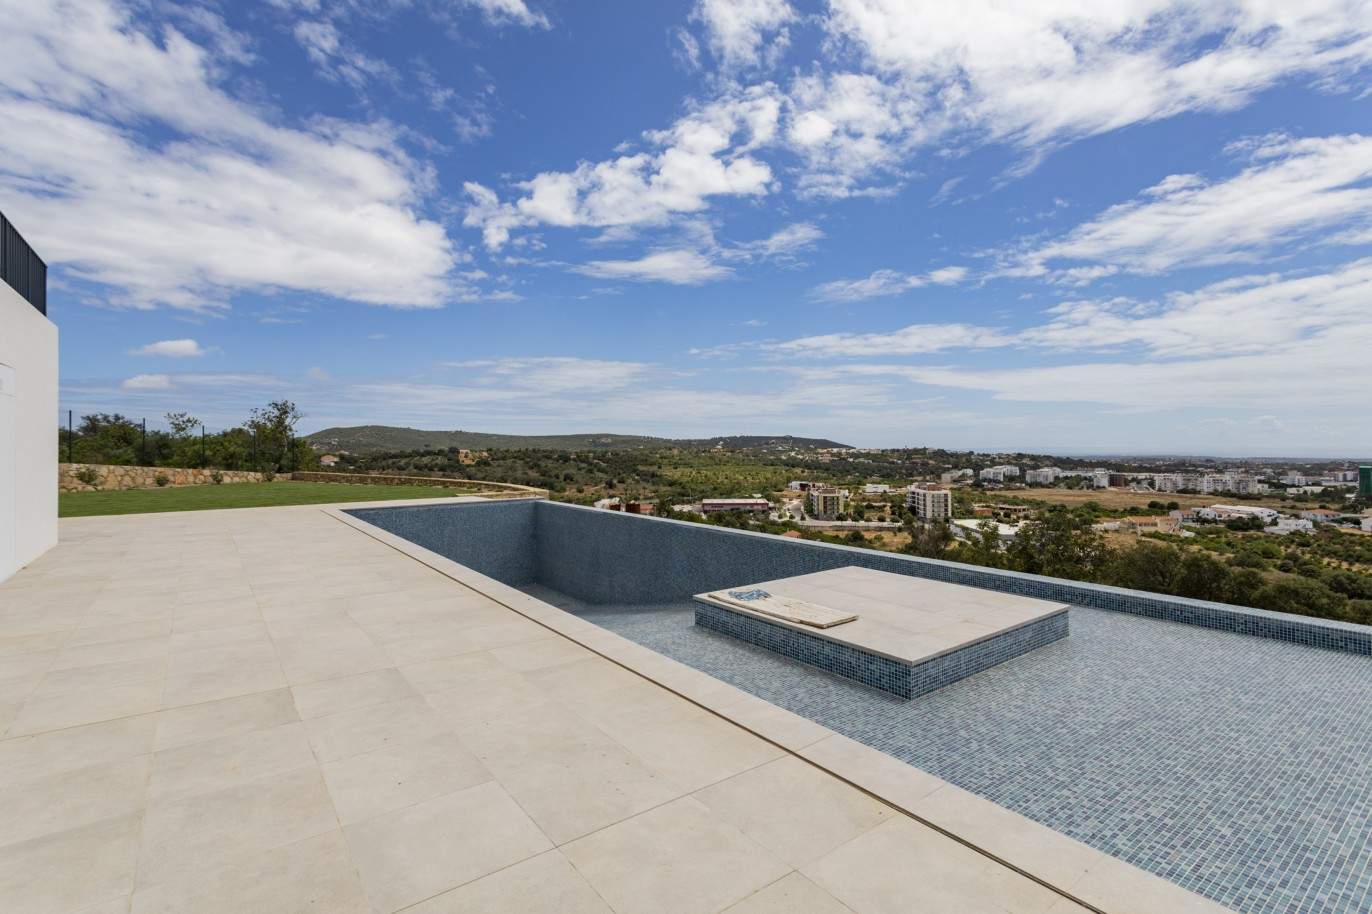 Villa de 4 dormitorios con piscina, en venta en S.Clemente, Loulé, Algarve_201810